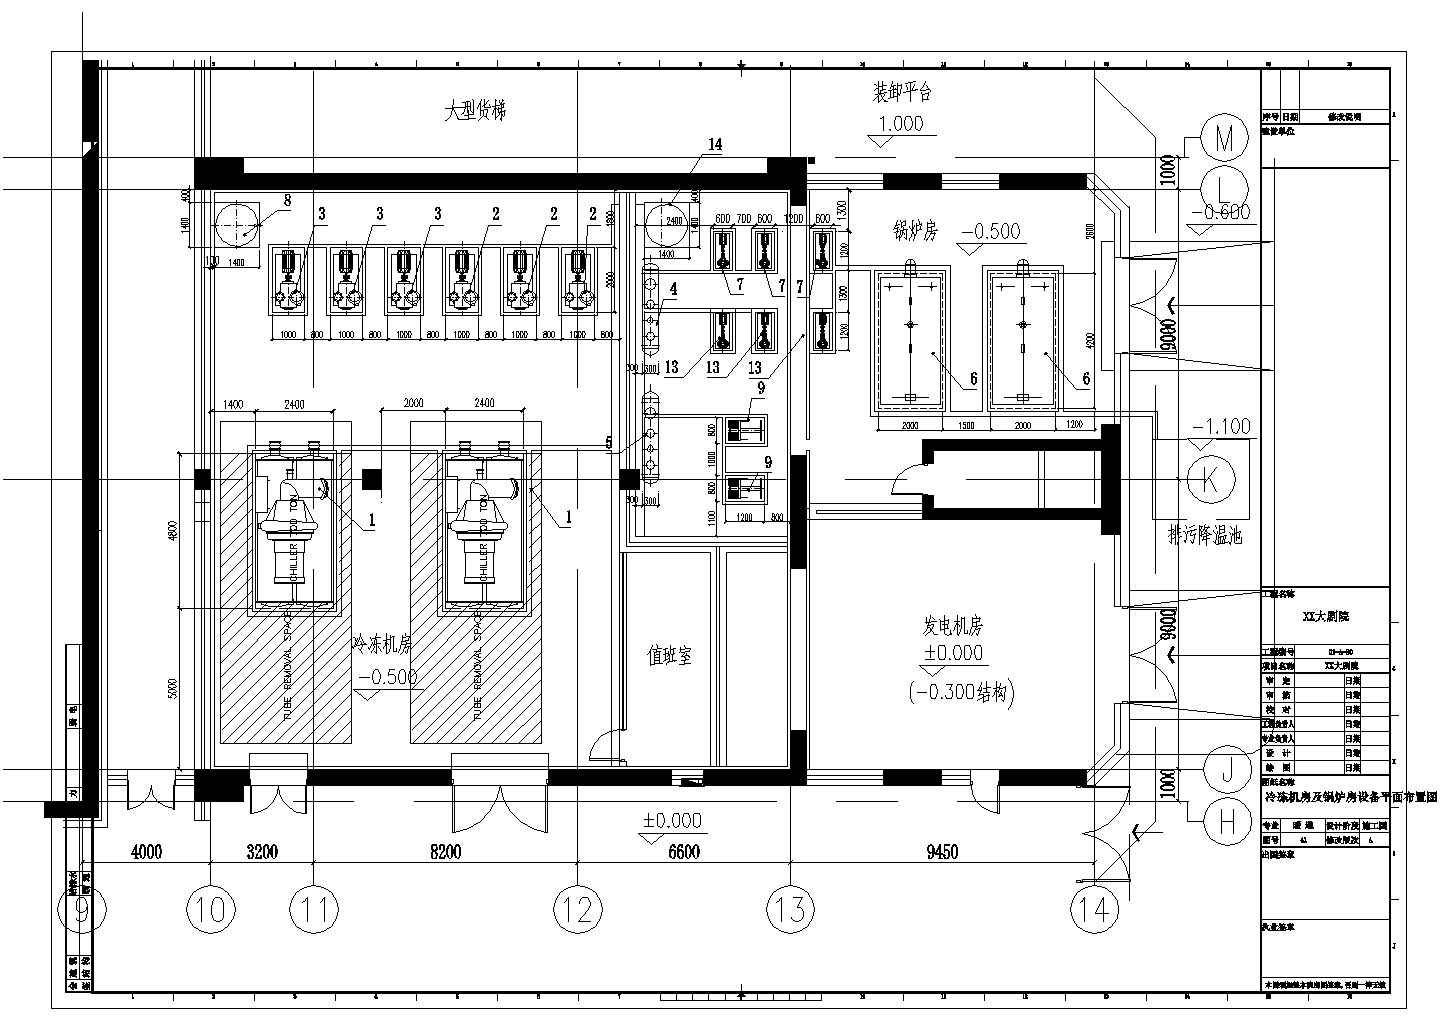 【浙江】大型豪华剧院暖通空调全套设计施工图纸(著名设计院设计)